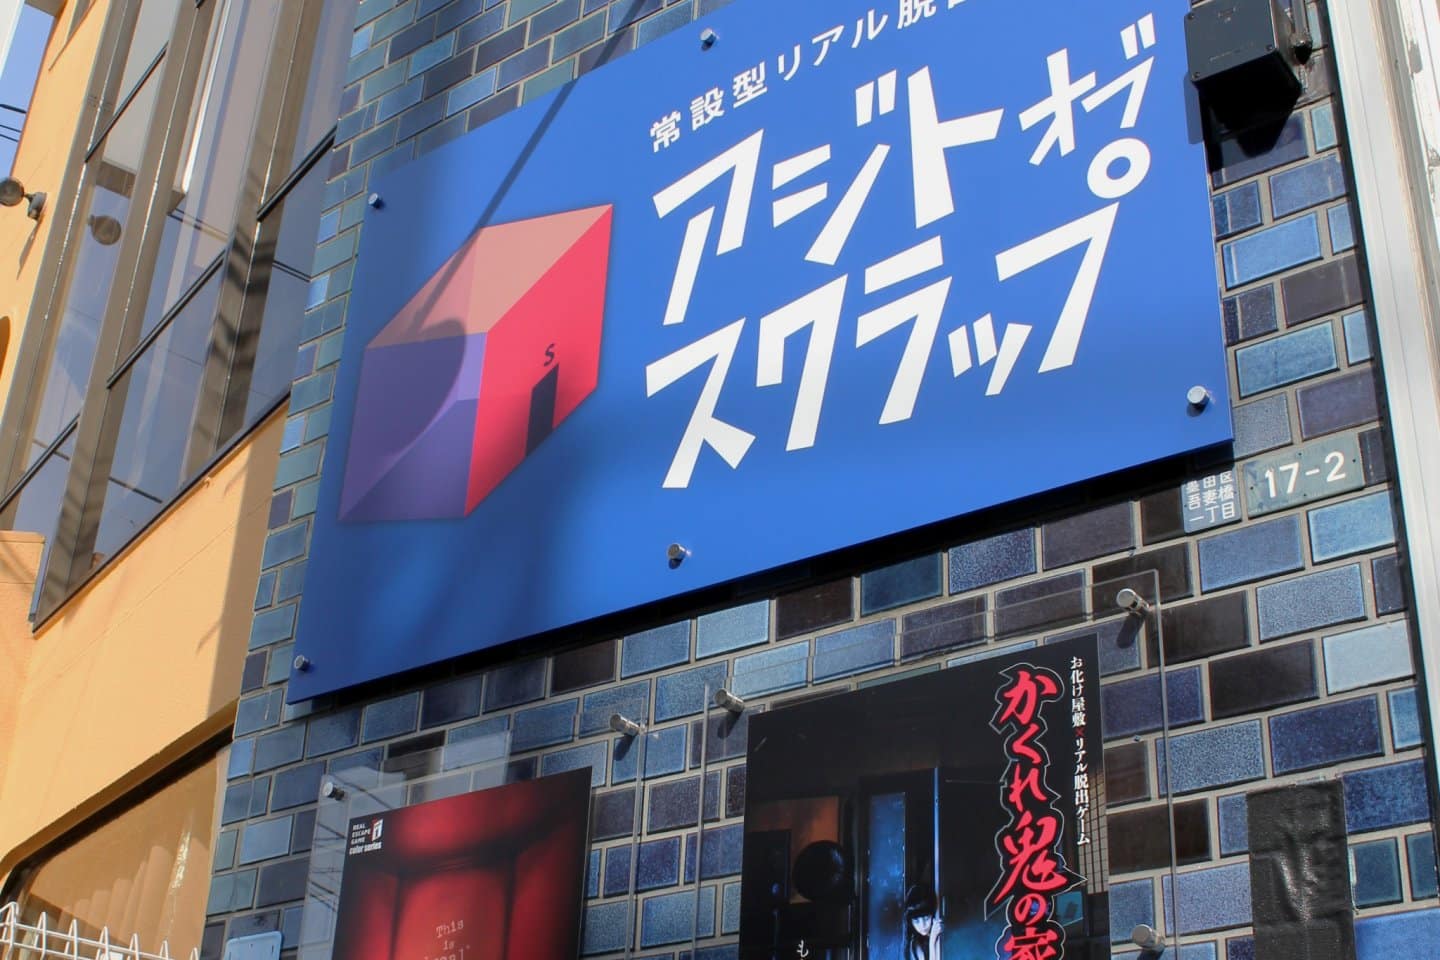 تابلویی با متن ژاپنی و انگلیسی که در خارج از ساختمان با فونت و طرح سبک یکپارچهسازی با سیستمعامل، با آرم نمادین ویندوز، نشان‌دهنده یک تجارت مرتبط با فناوری یا رایانه است.